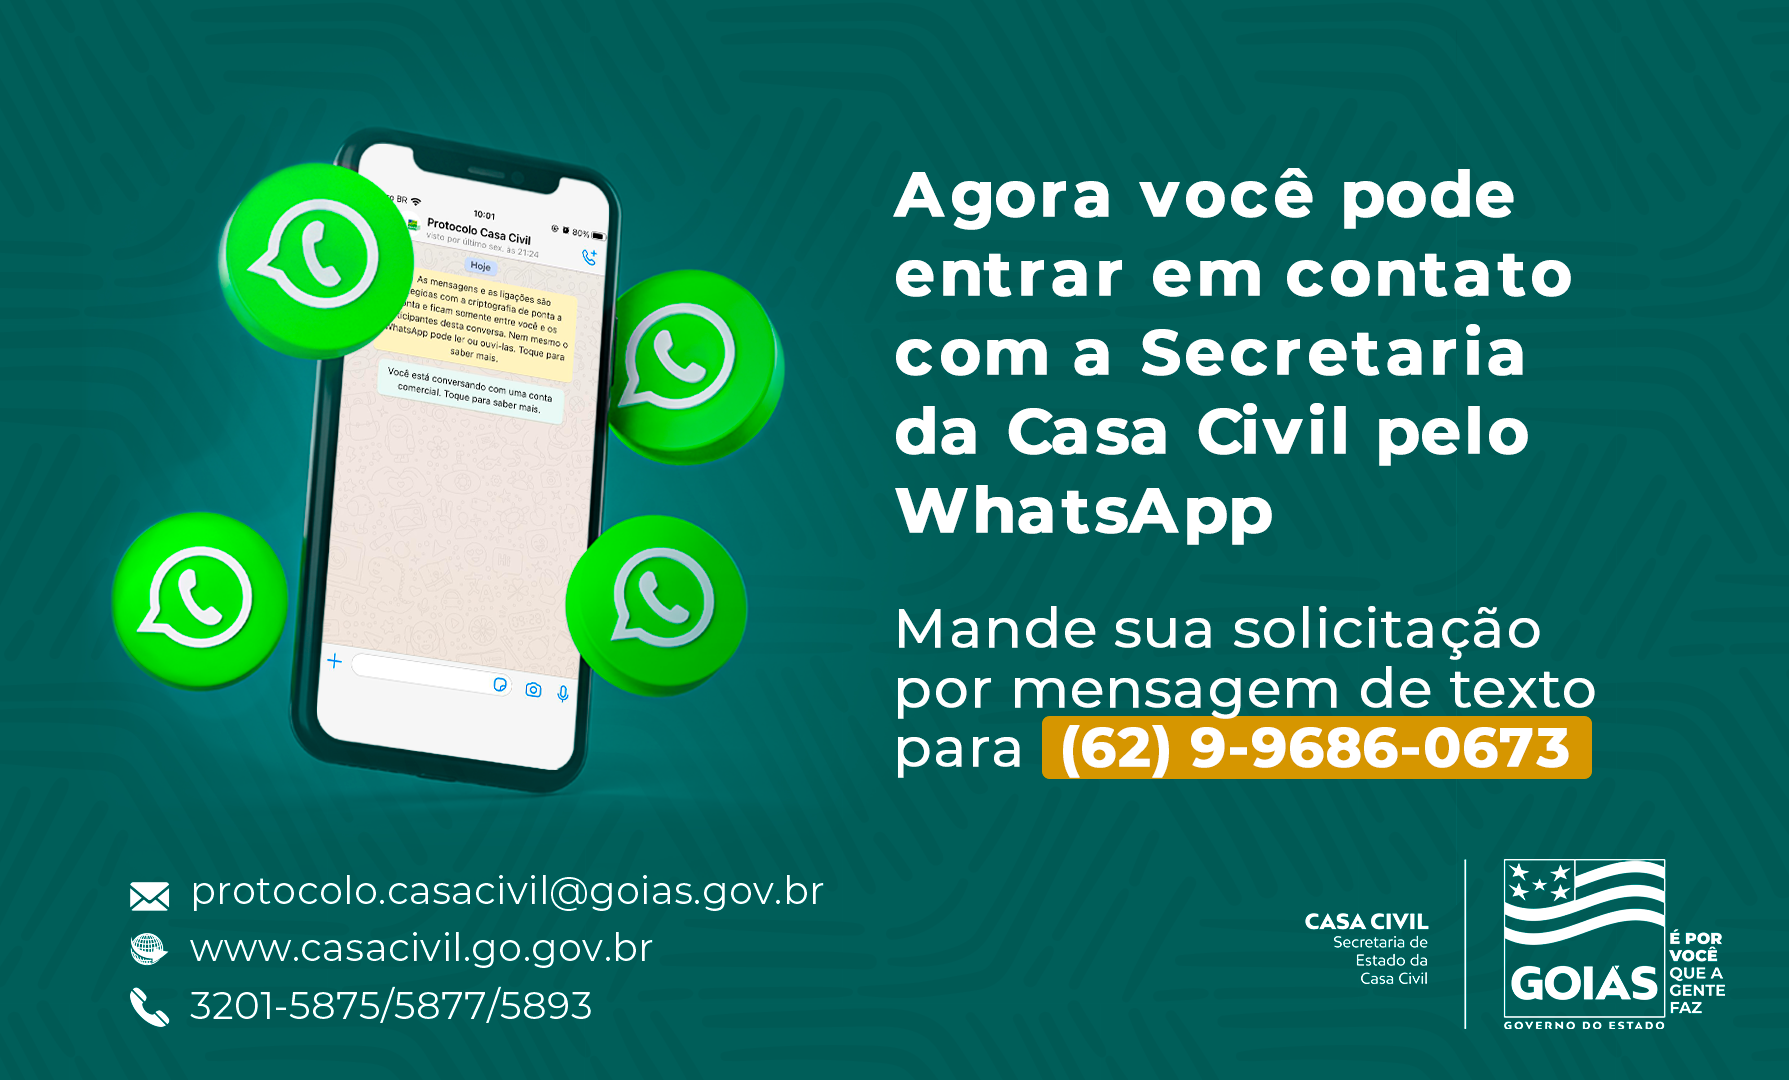 A abertura de mais este meio de atendimento reforça a proposta de transparência do Governo de Goiás e também de estar cada vez mais próximo do cidadão, facilitando o acesso a serviços e a informações